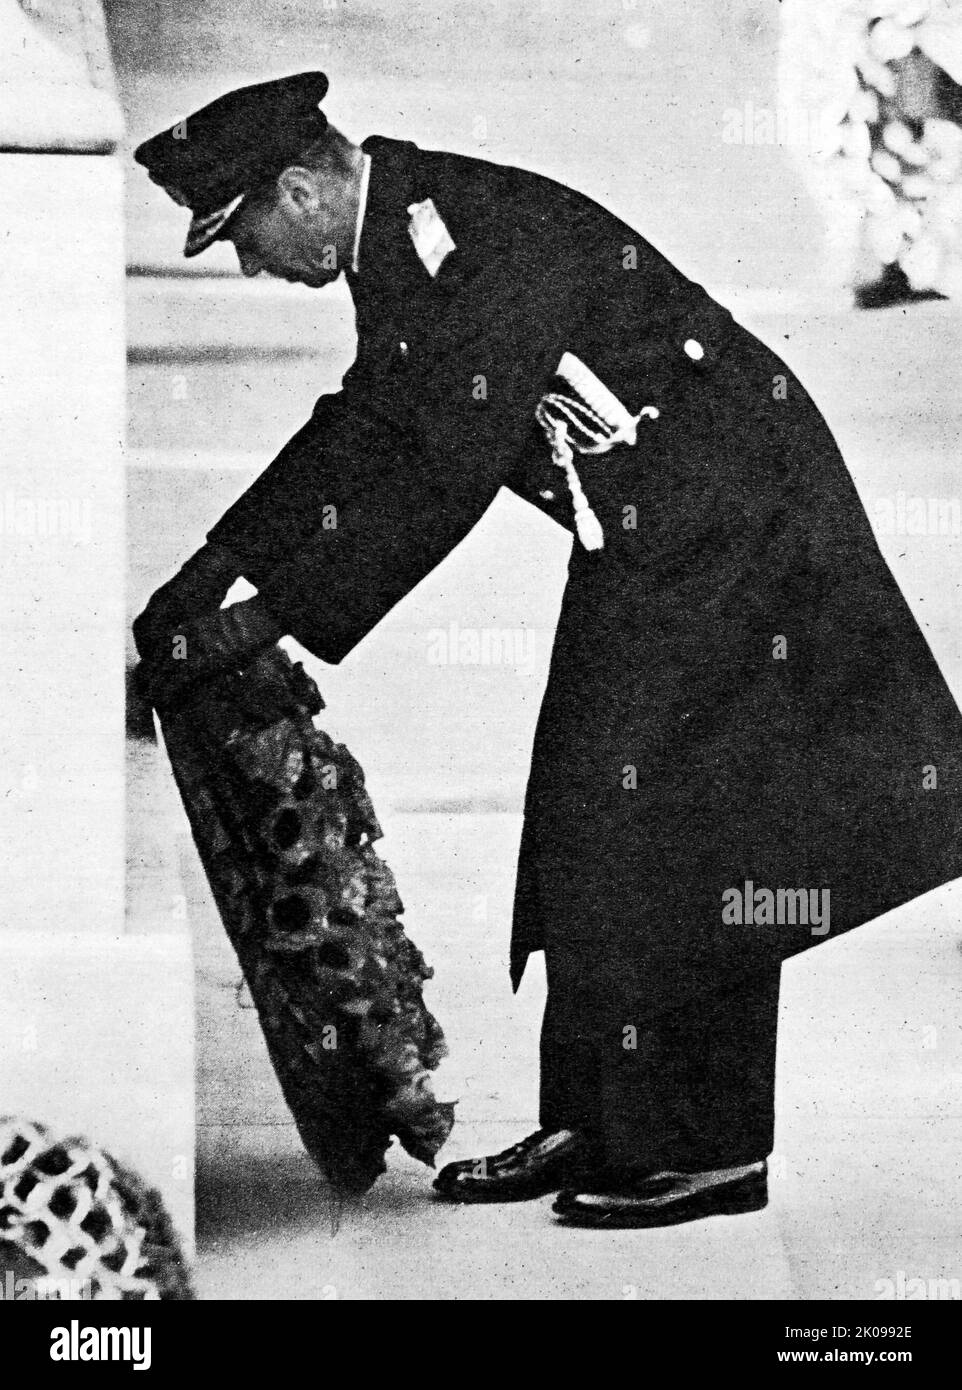 HM le roi pose une couronne au Cenotaph. George VI (Albert Frederick Arthur George; 14 décembre 1895 - 6 février 1952) fut roi du Royaume-Uni et des dominions du Commonwealth britannique du 11 décembre 1936 jusqu'à sa mort en 1952. Il fut simultanément le dernier empereur de l'Inde jusqu'en août 1947, quand l'Empire britannique fut dissous. Banque D'Images